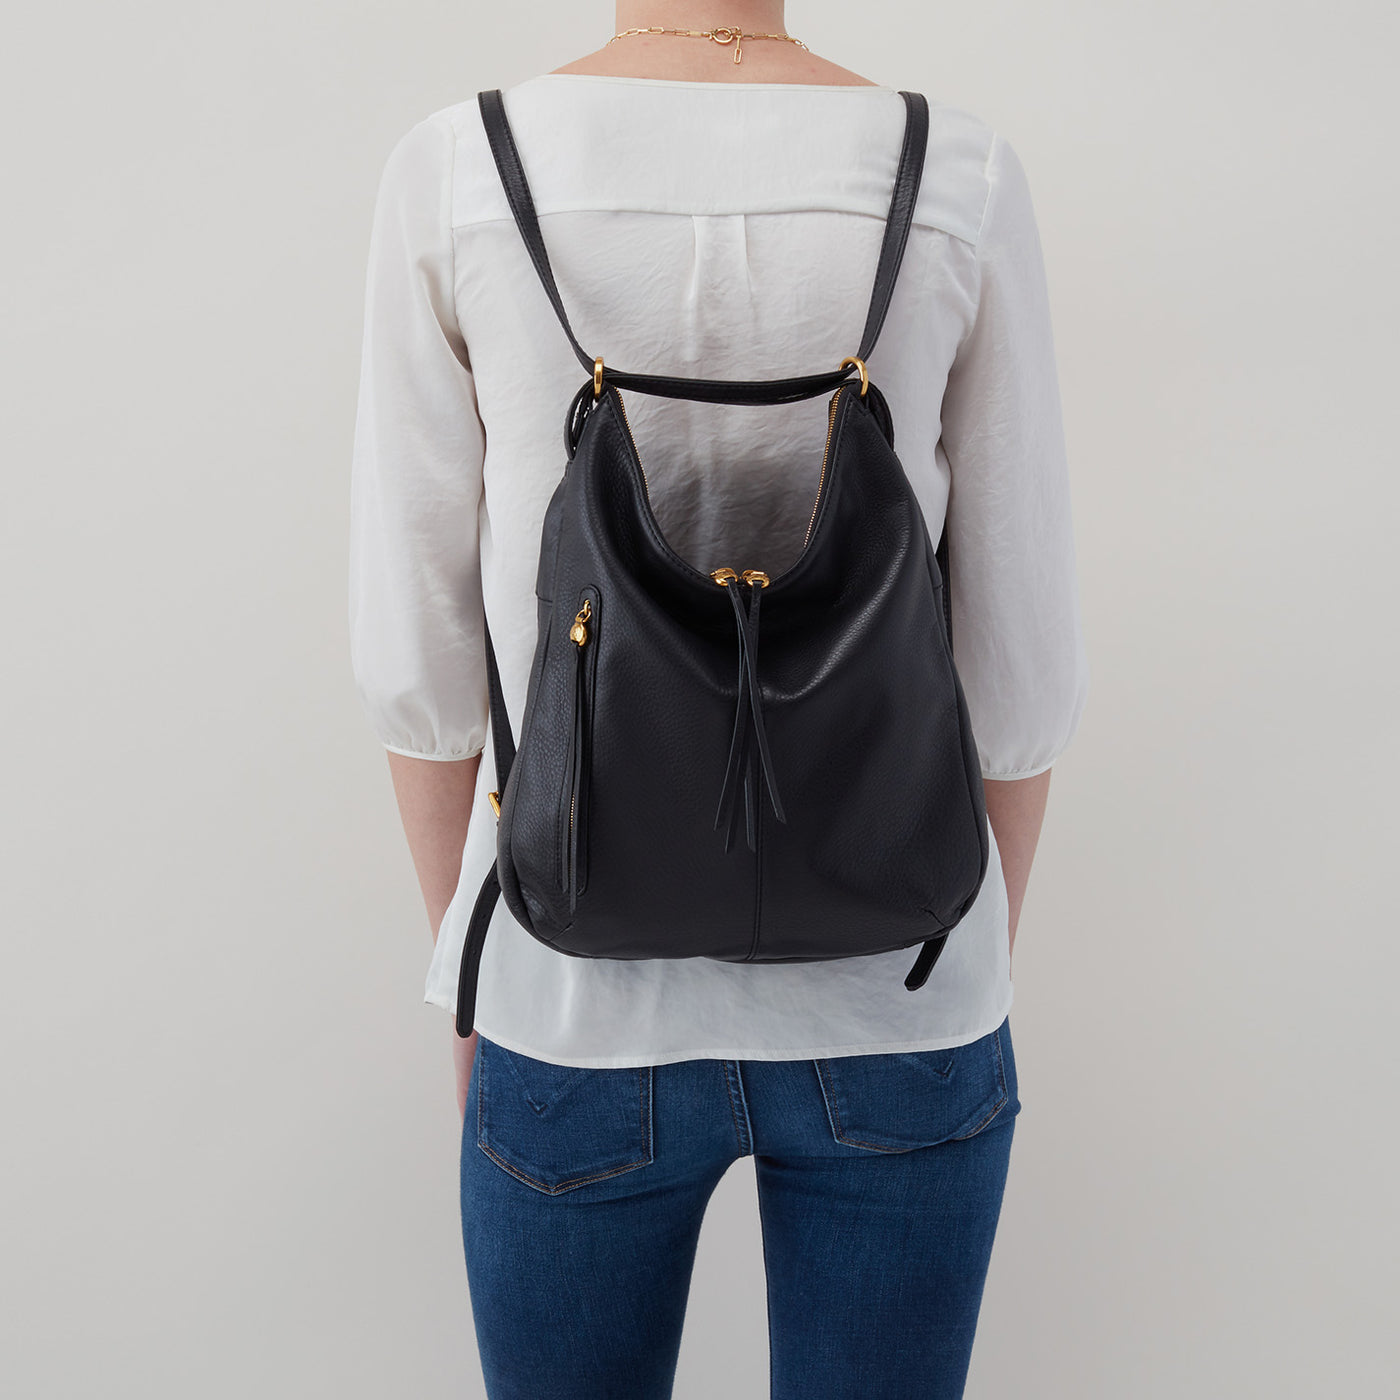 Convertible Backpack Purse For Women Handbag Hobo Tote Satchel Shoulder Bag  - Sm | eBay